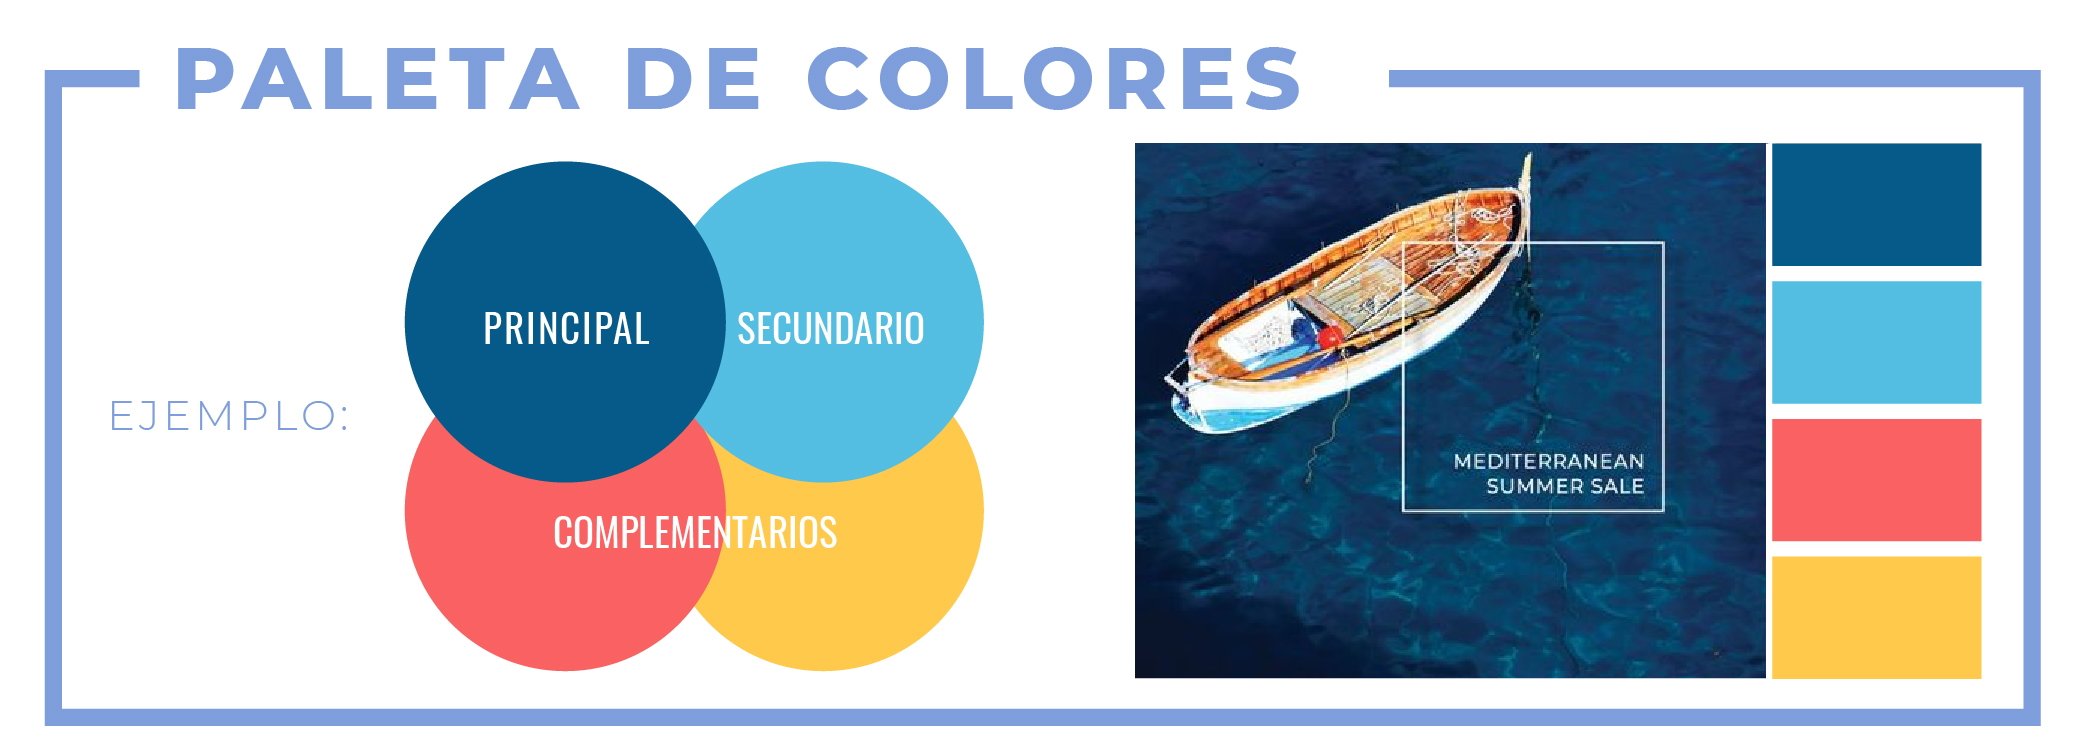 El impacto del color en el marketing: cómo elegir la paleta perfecta 